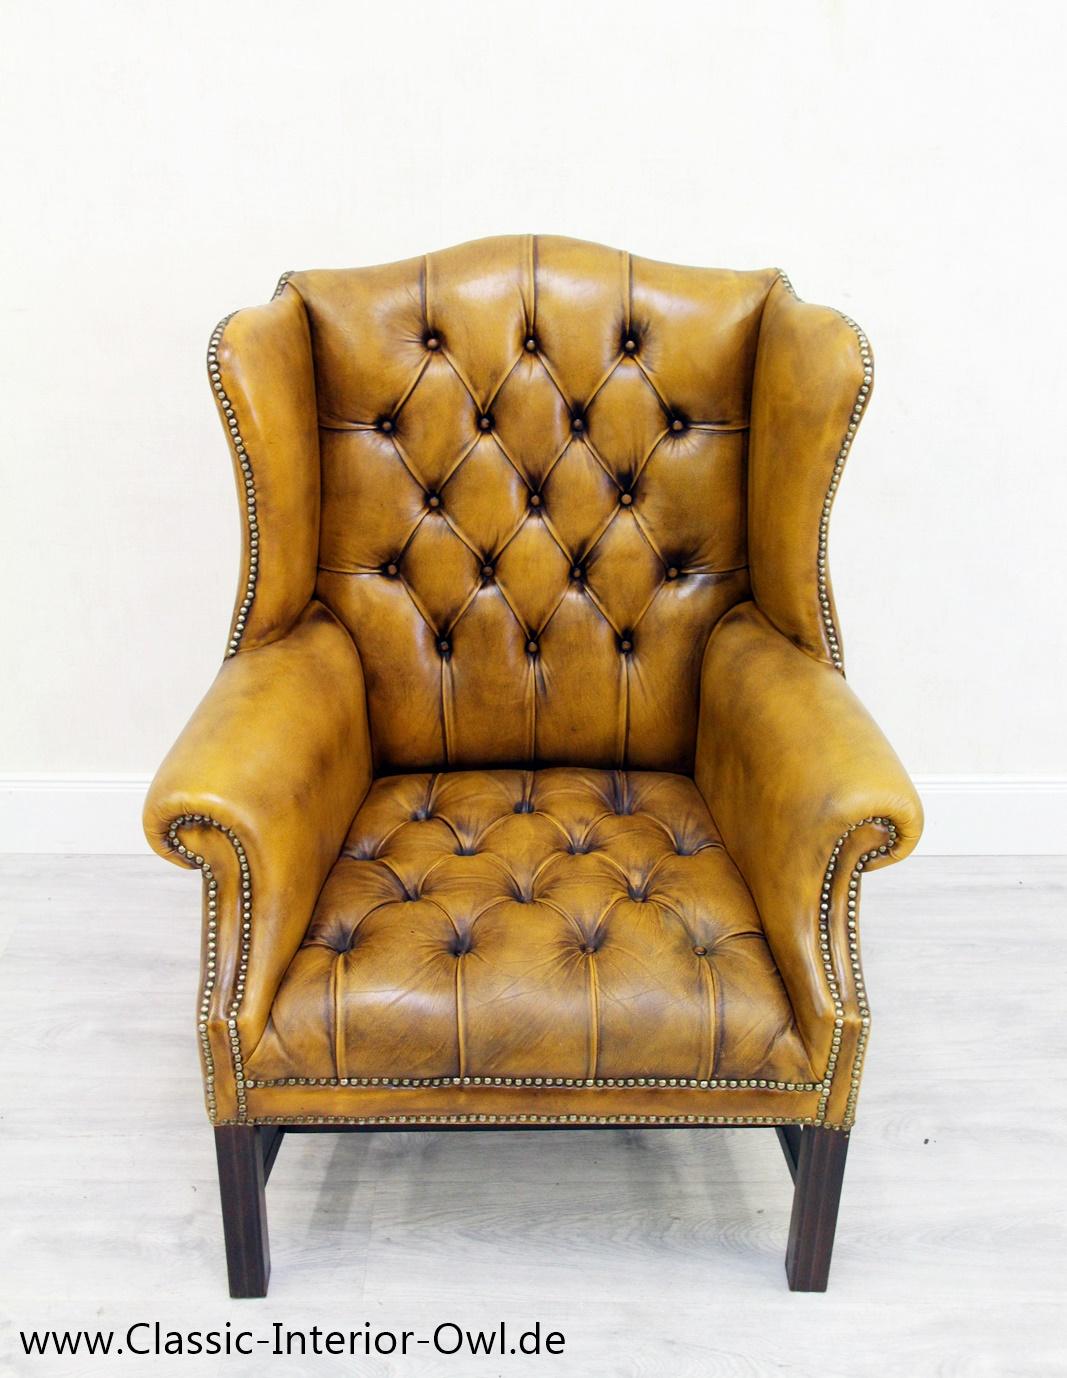 Chesterfield Ohrensessel
Sessel

Zustand: Der Sessel ist in einem SEHR gutem Zustand für sein alter und hat noch den Charme der 